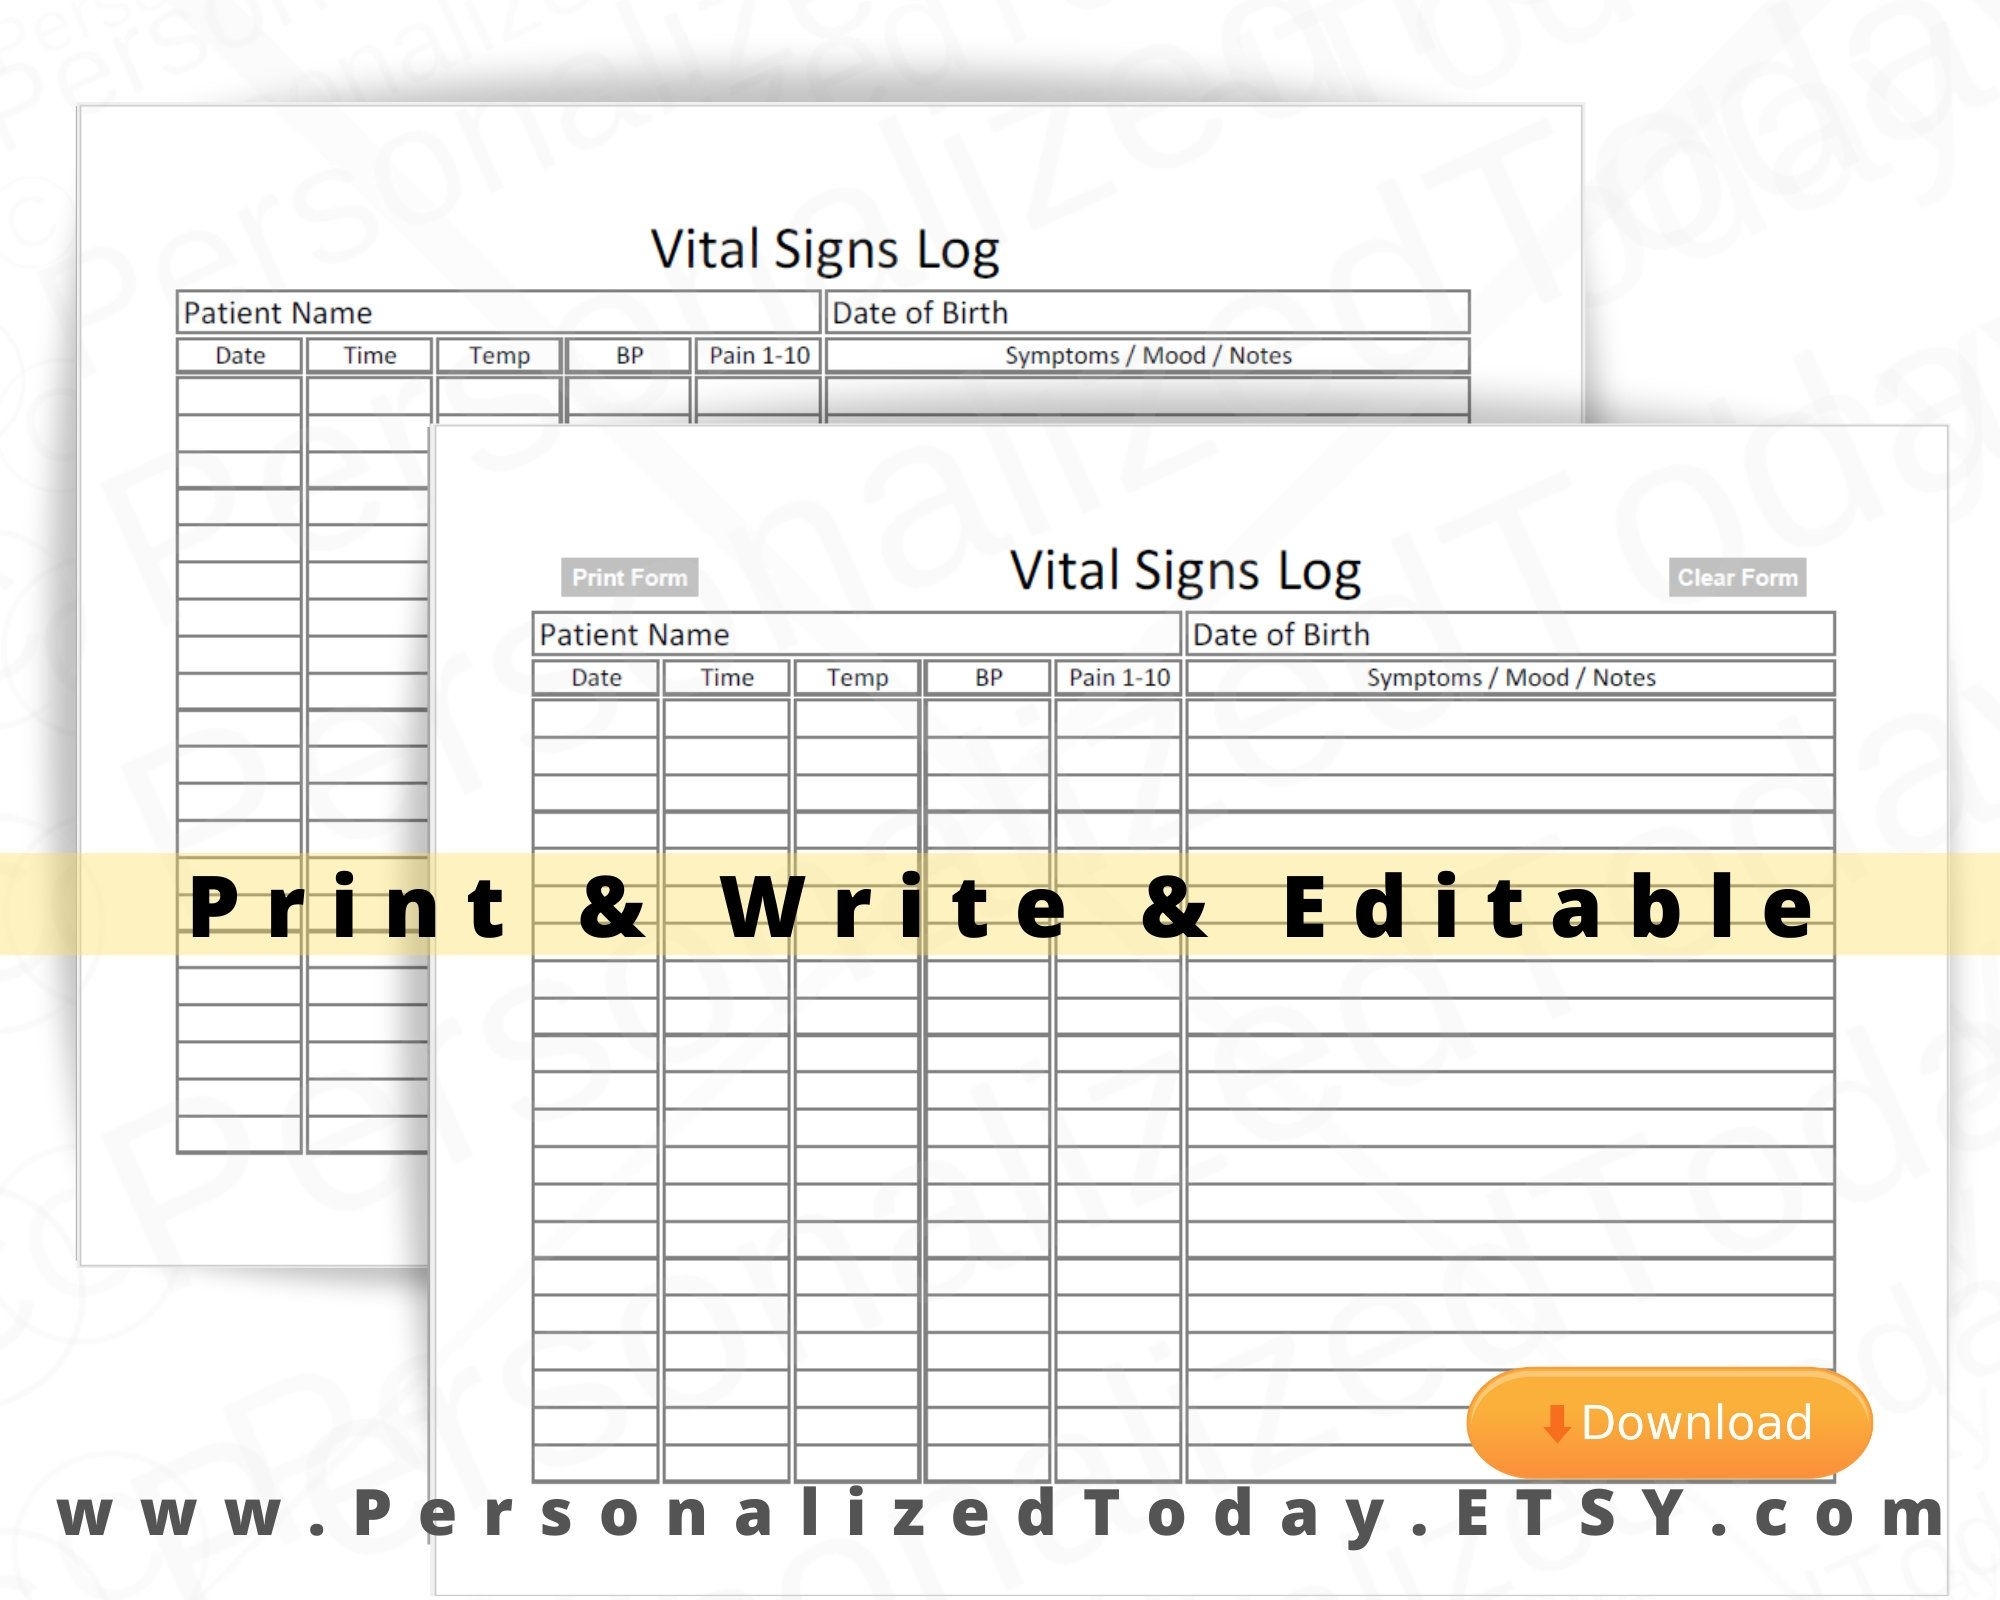 Vital Signs Log Fillable Editable And Print And Write Pdf